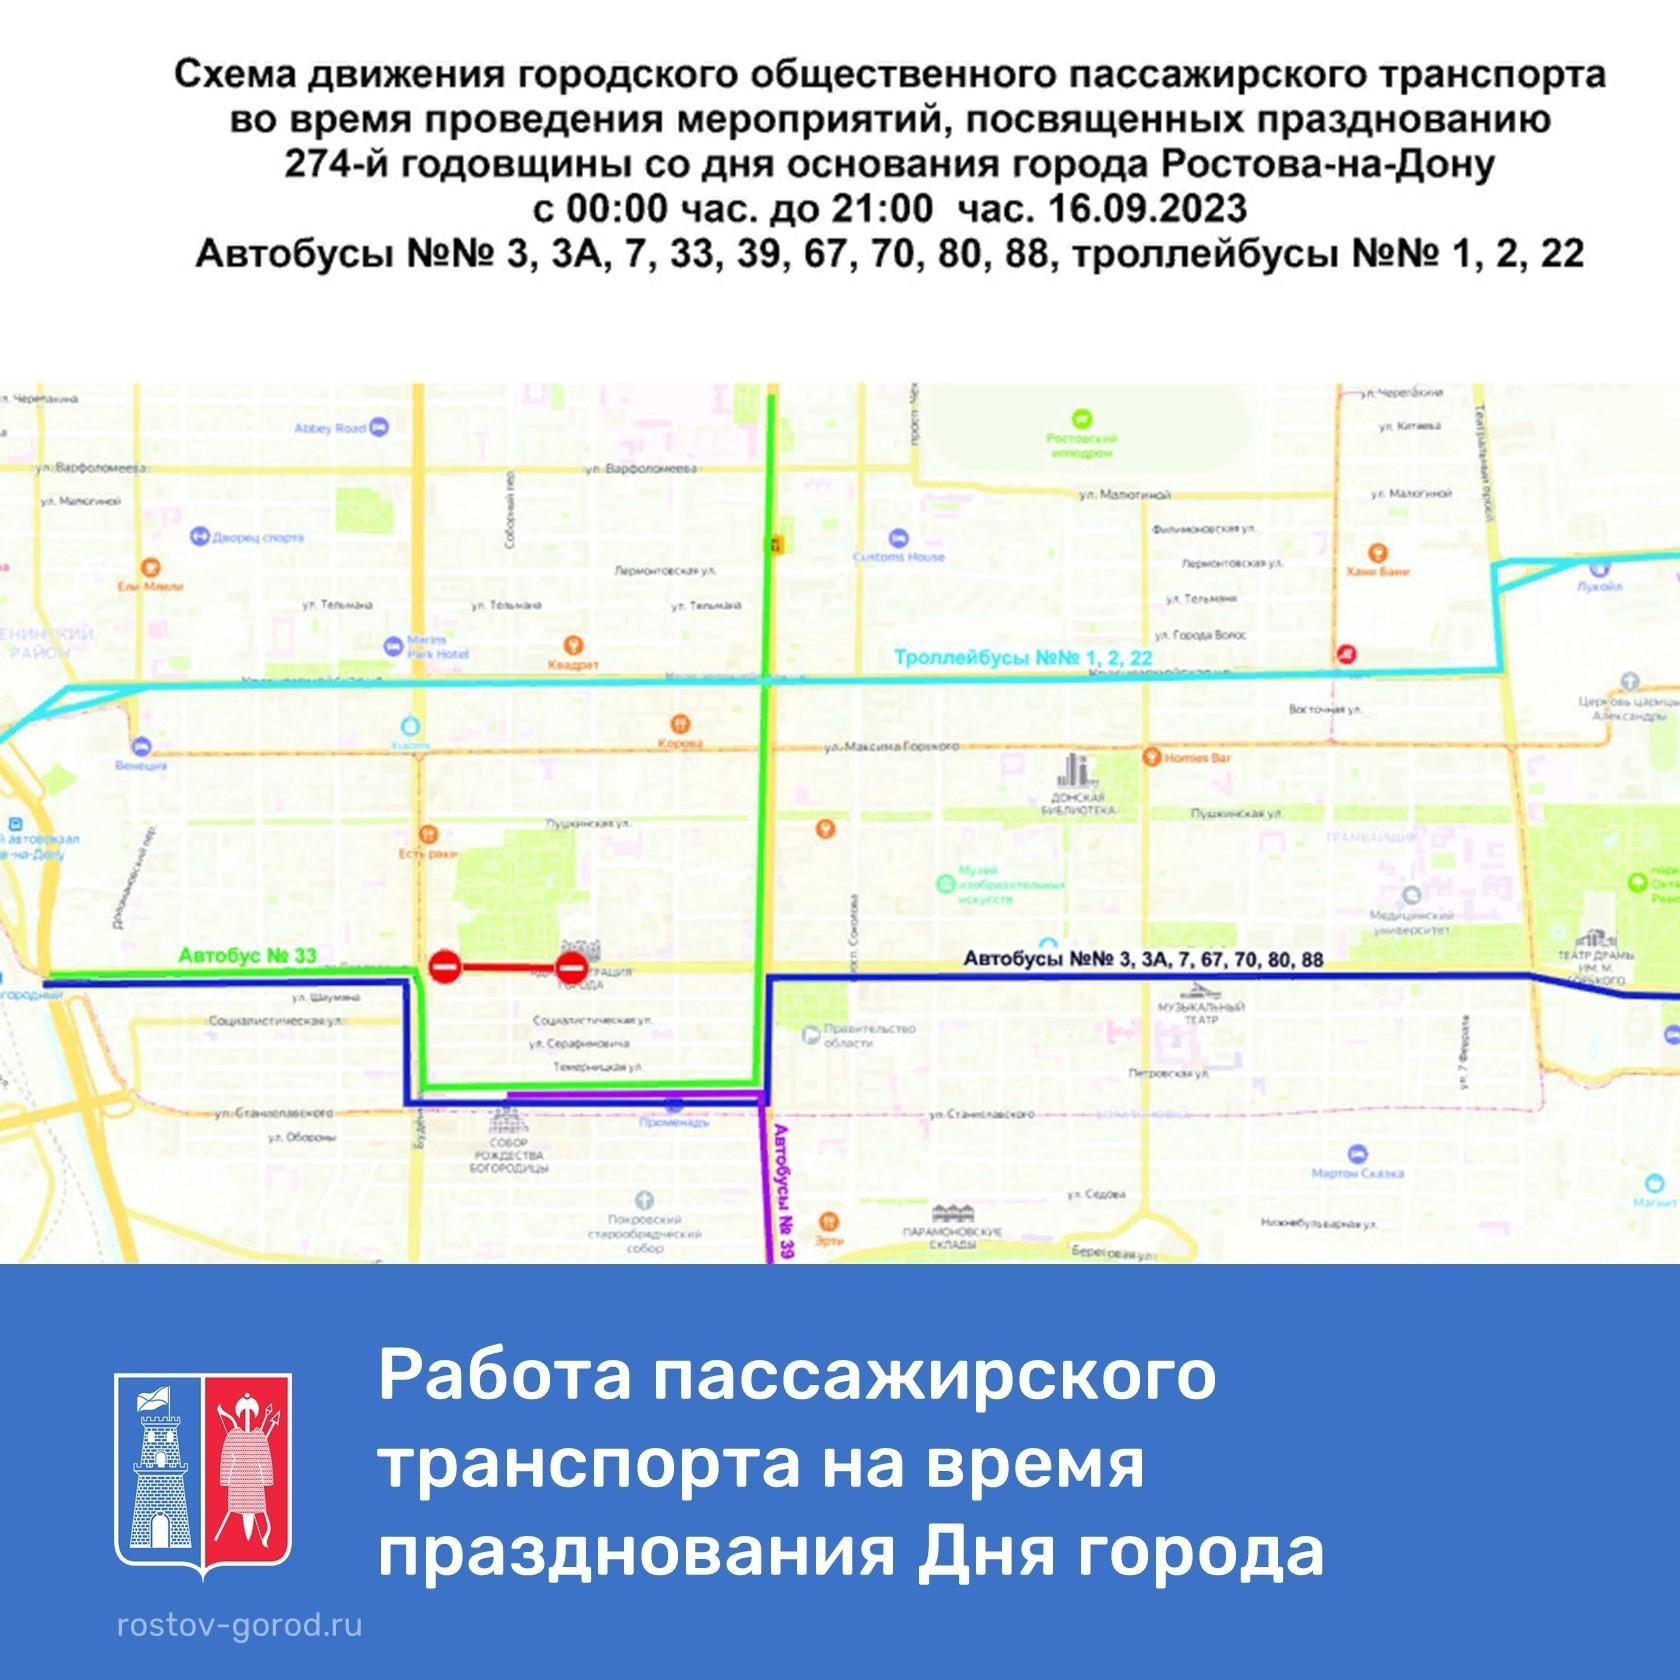 Схему движения для общественного транспорта поменяют в Ростове в День города